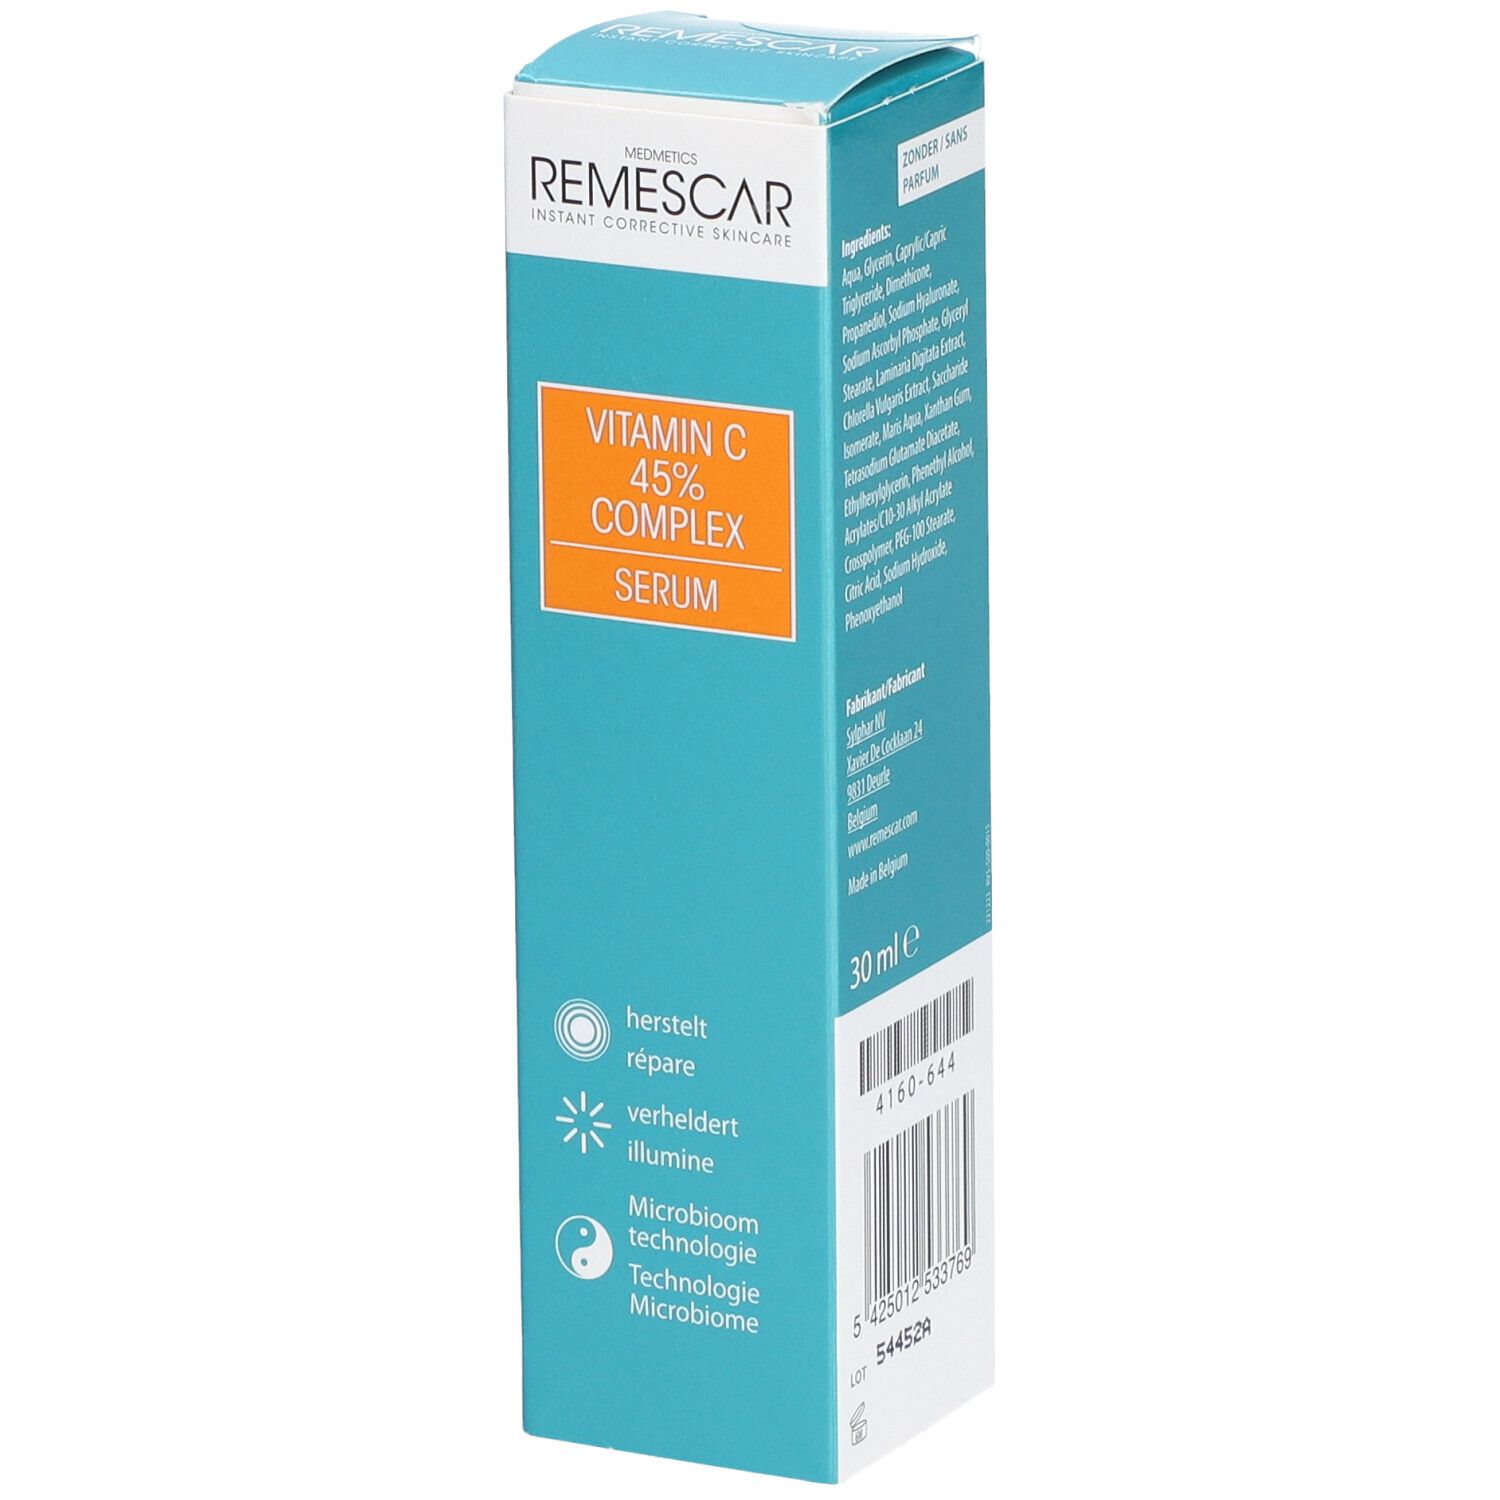 Image of Remescar Repair Serum